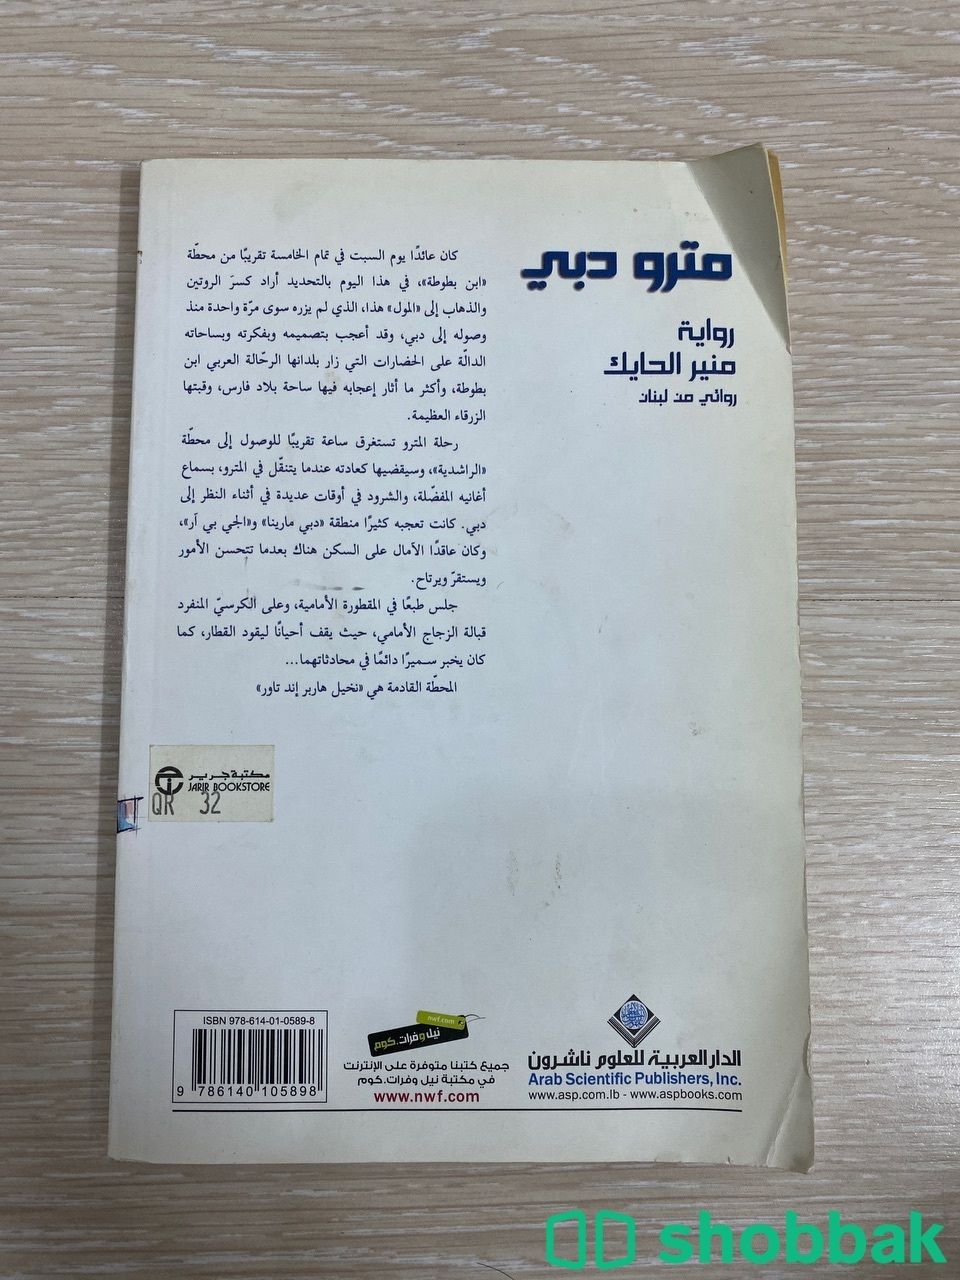 كتاب للبيع  Shobbak Saudi Arabia